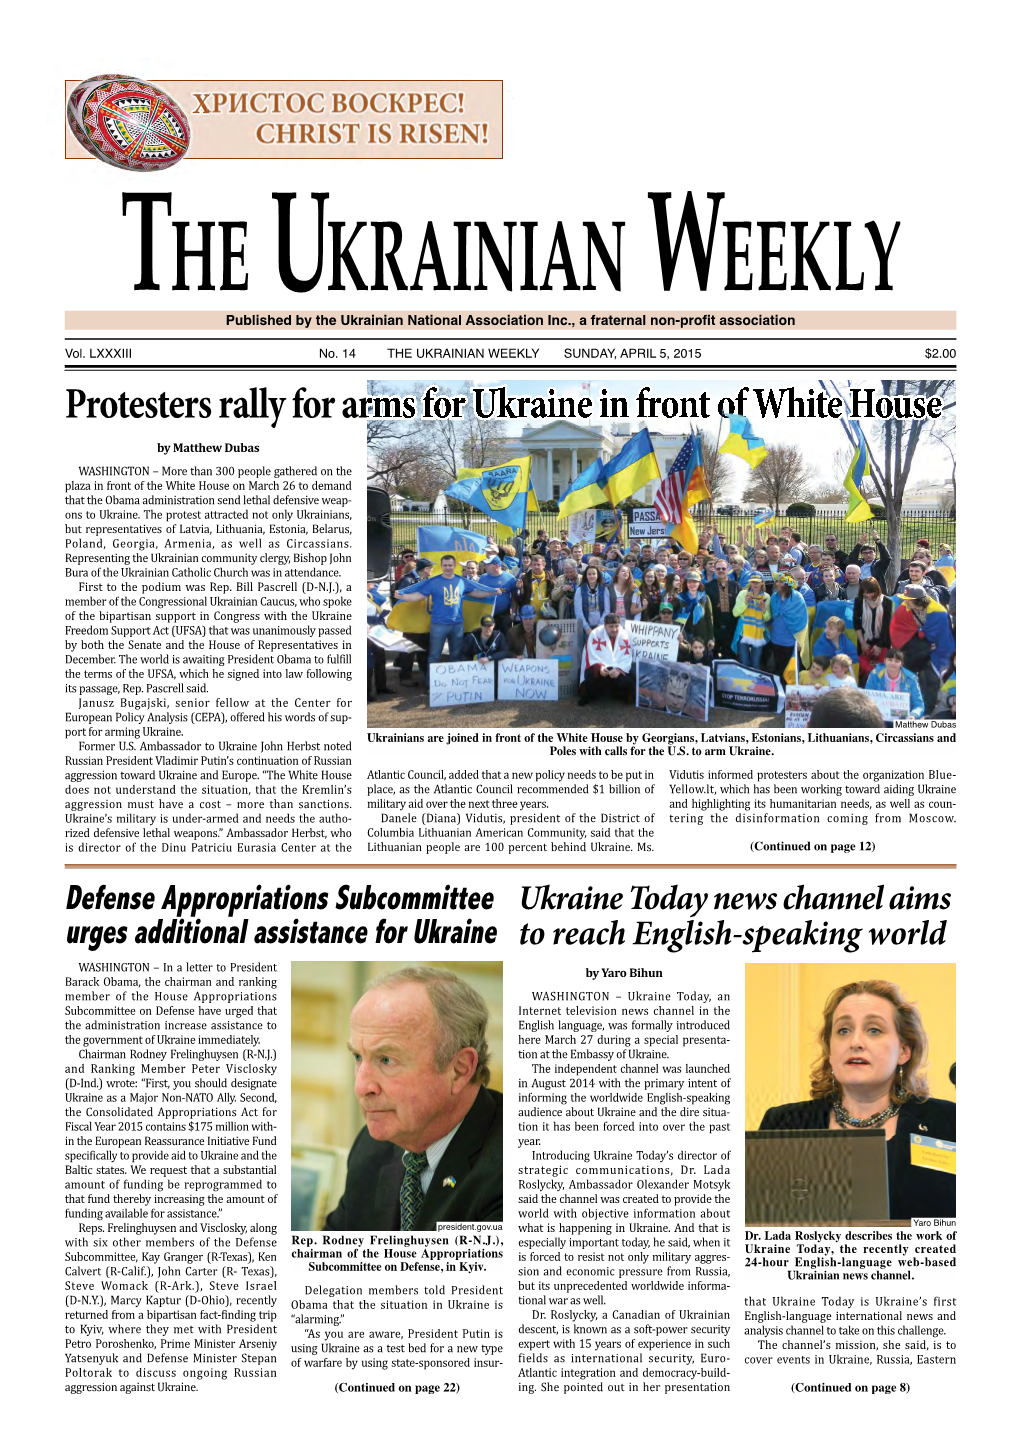 The Ukrainian Weekly, 2015